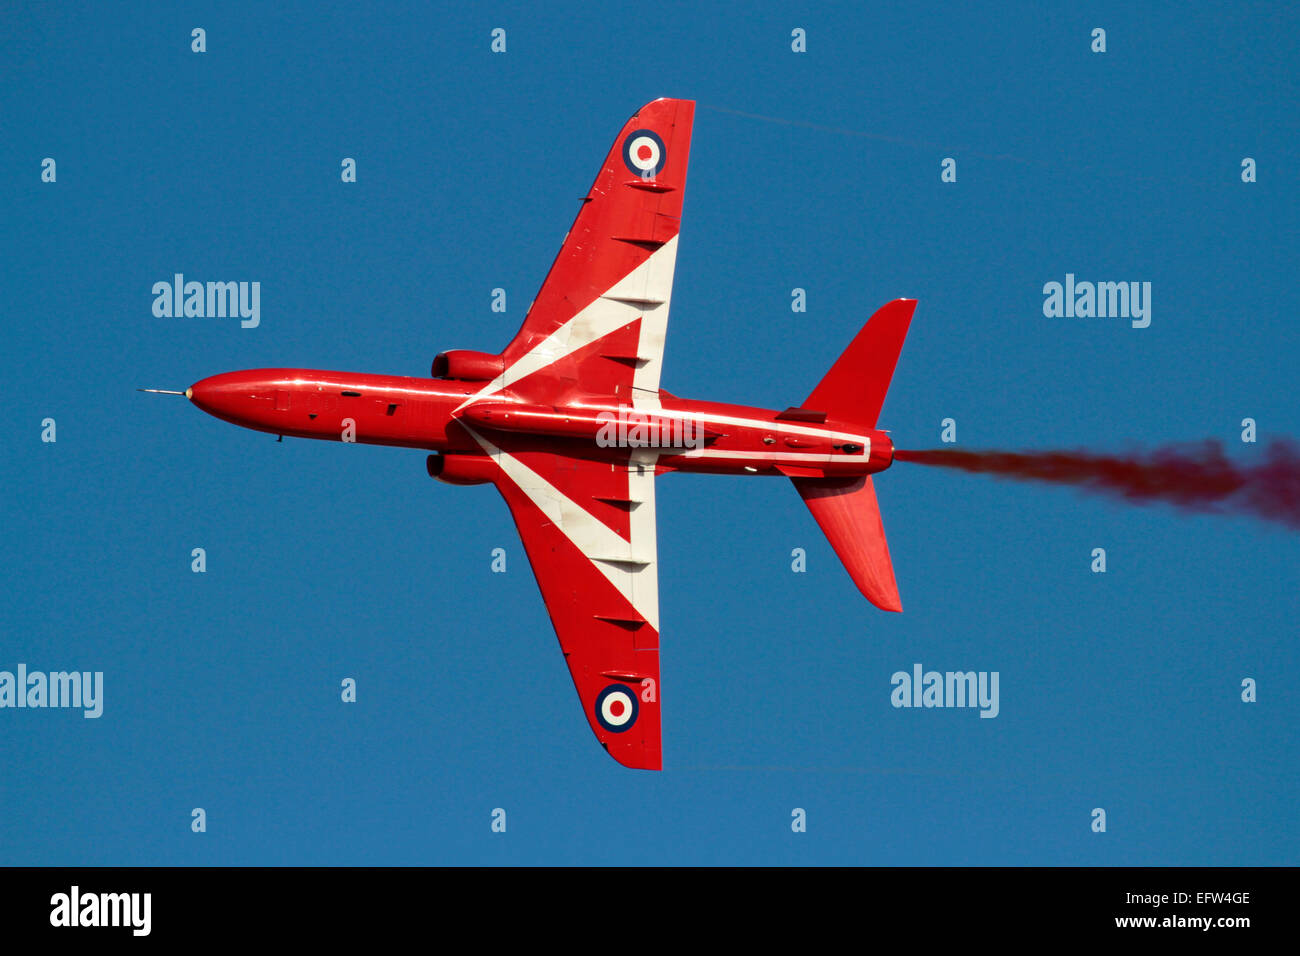 British Aerospace Hawk der Royal Air Force Kunstflugstaffel Red Arrows während einer Anzeige Stockfoto